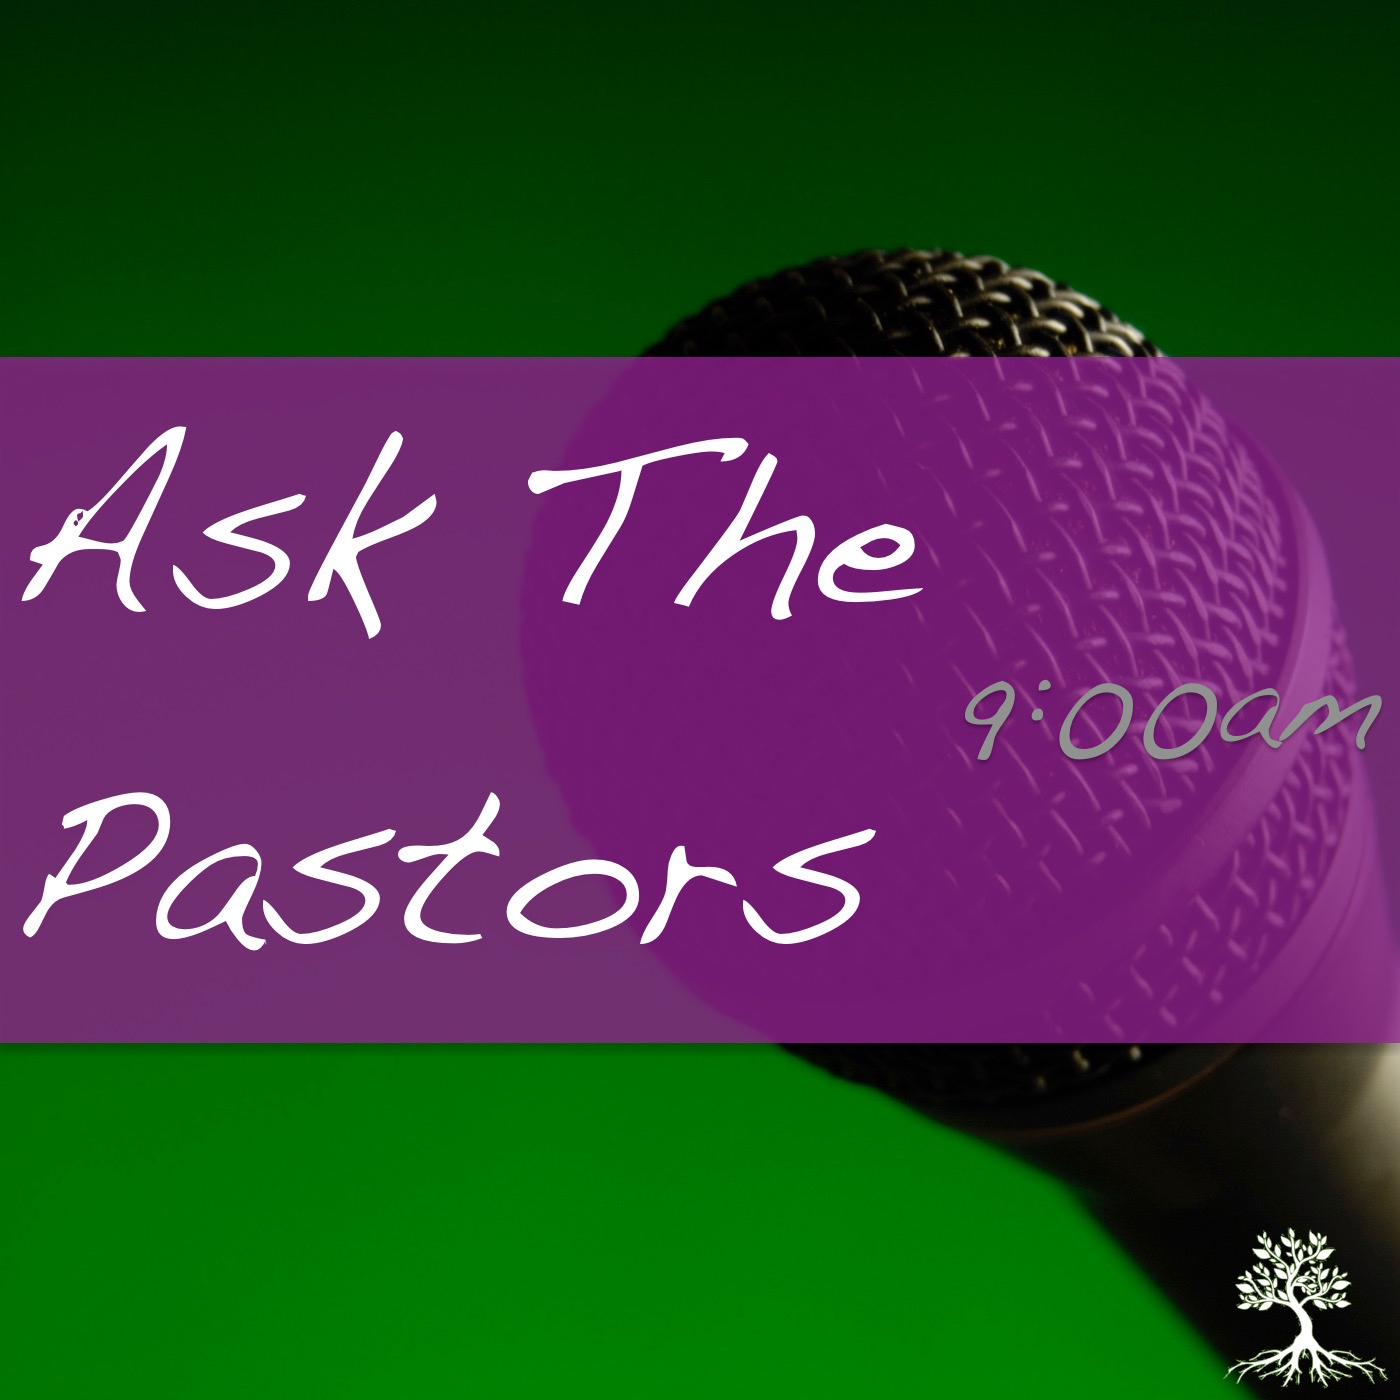 Ask The Pastors (9:00am 11/19/17)